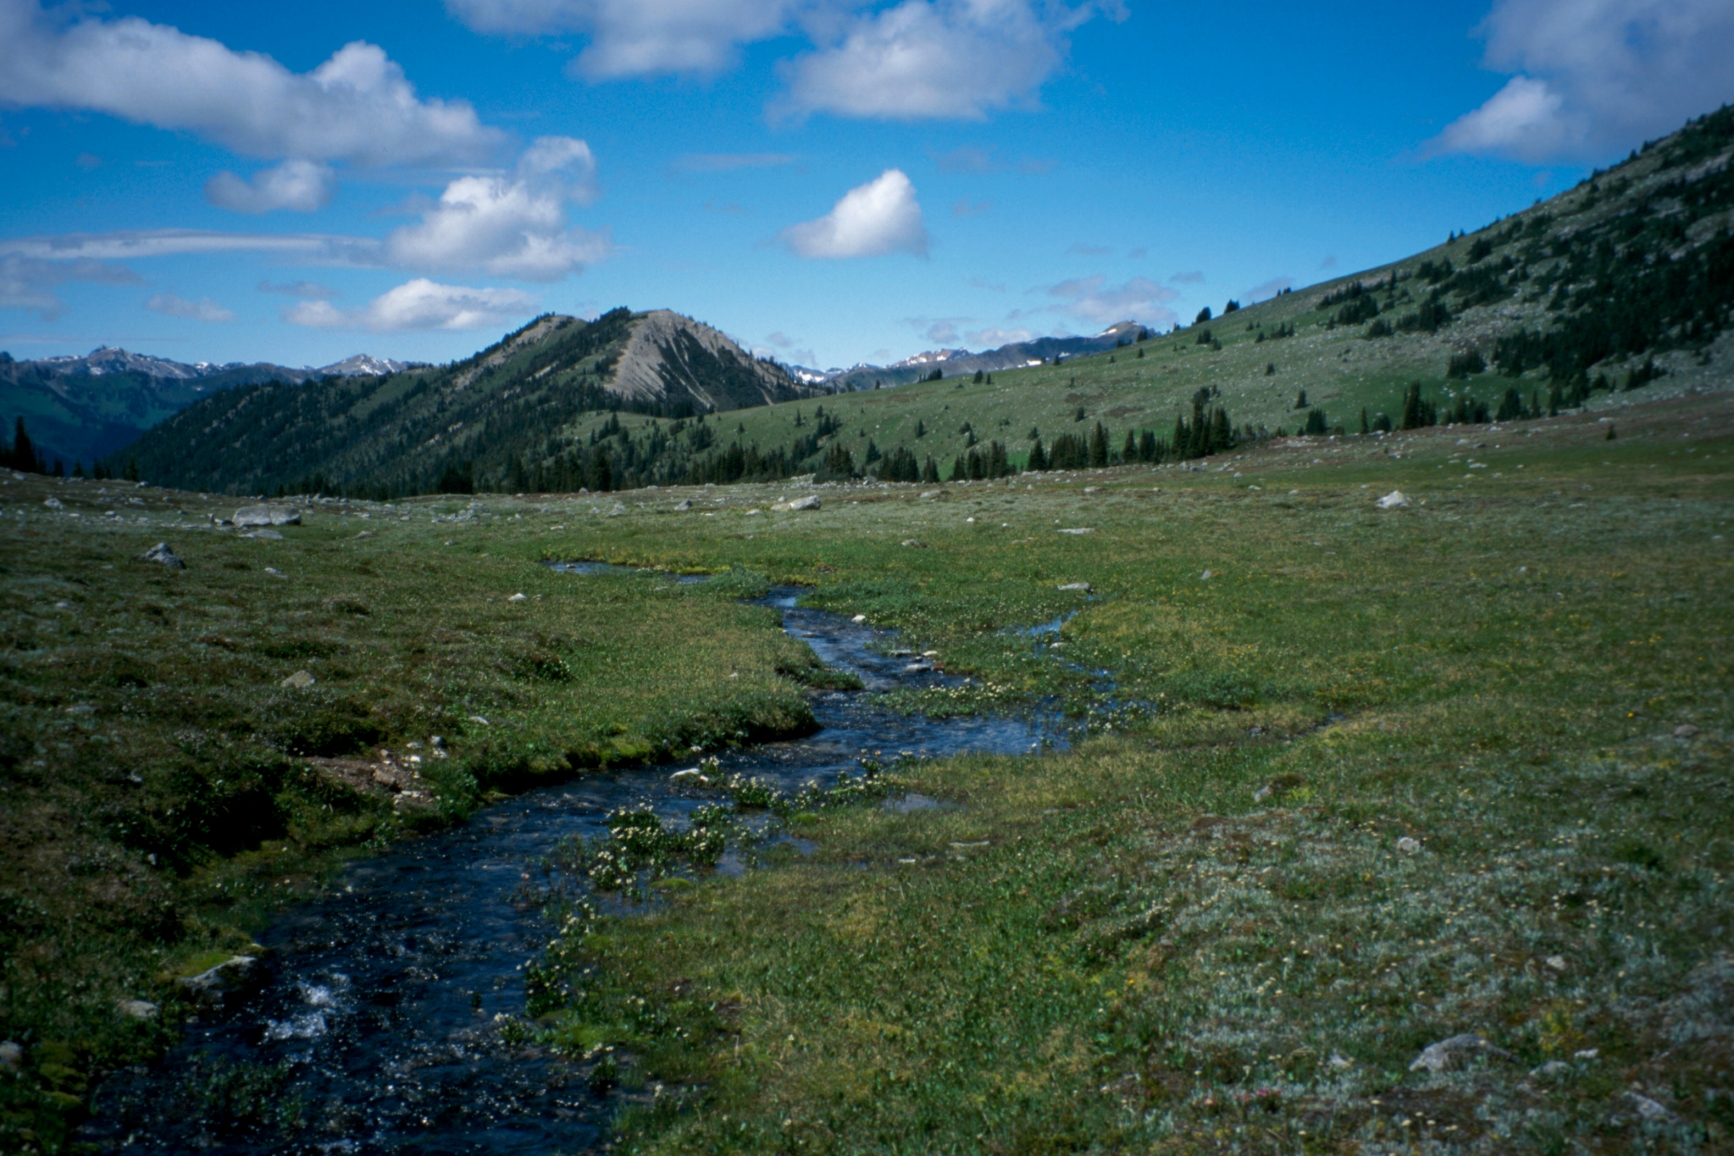 Stein Valley scenery